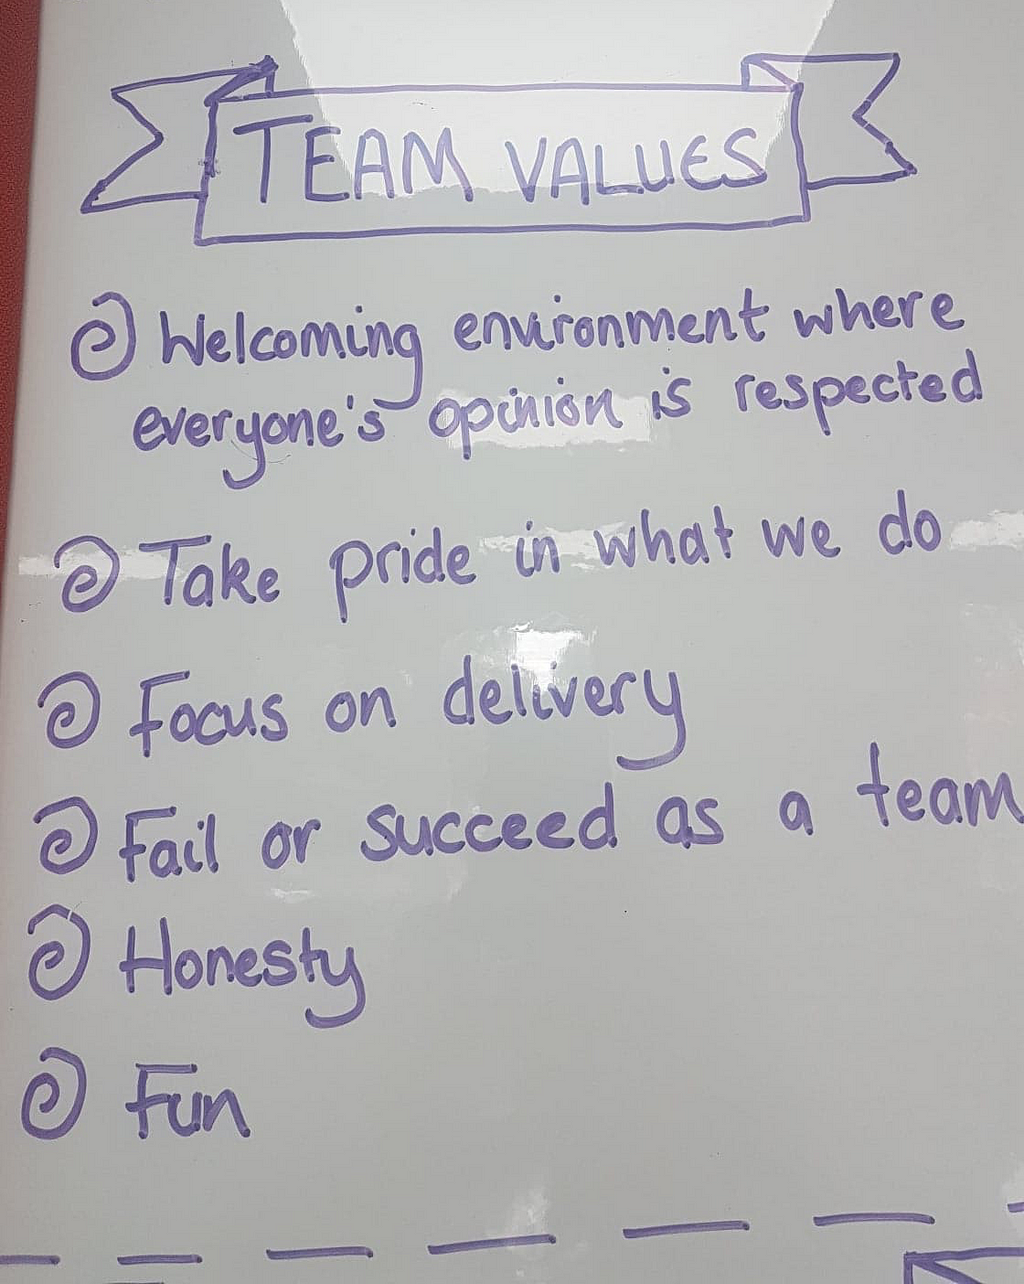 List of team values